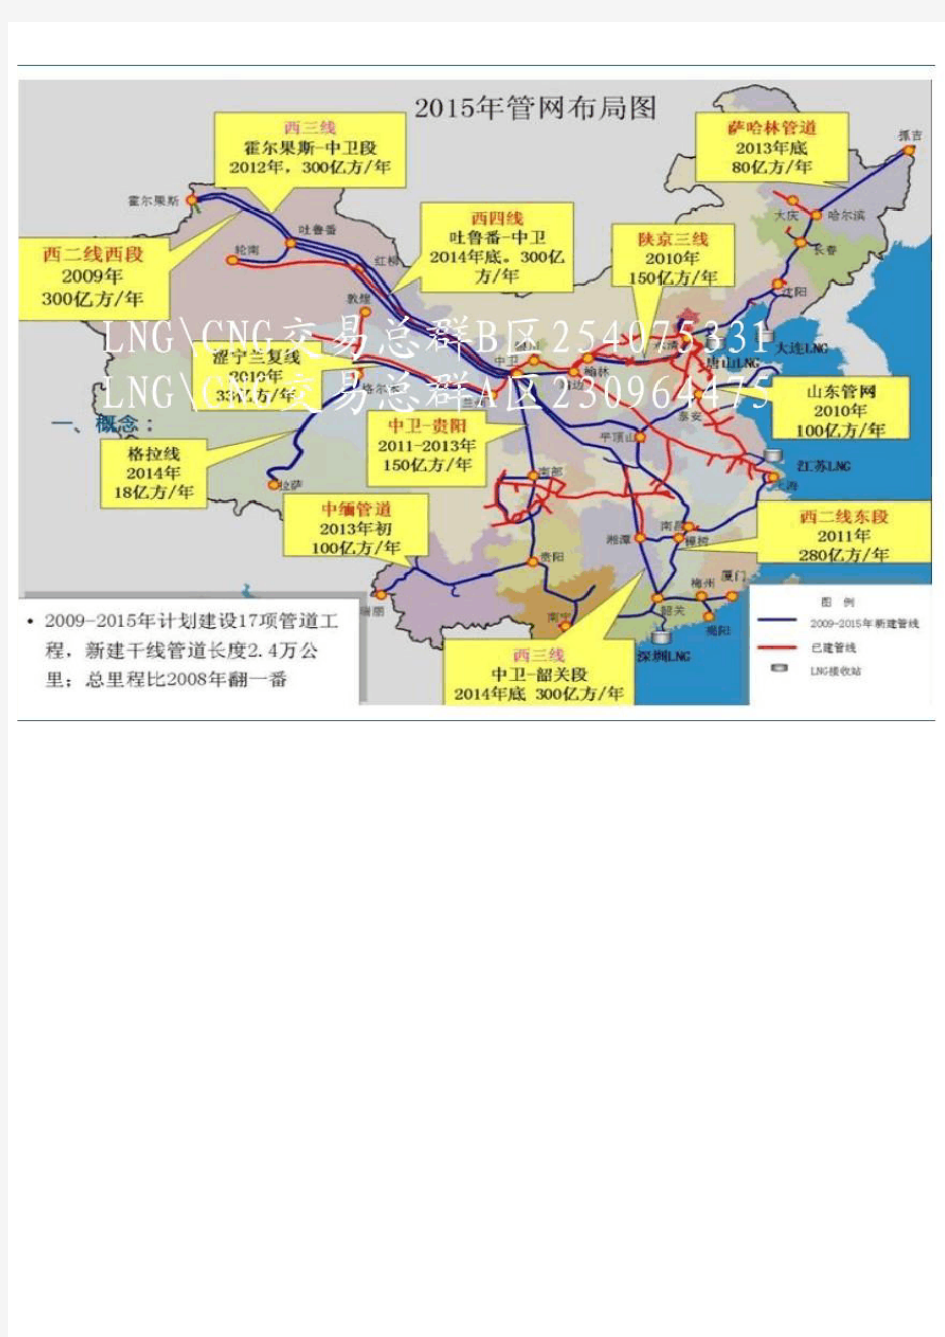 中国天然气管网布局图